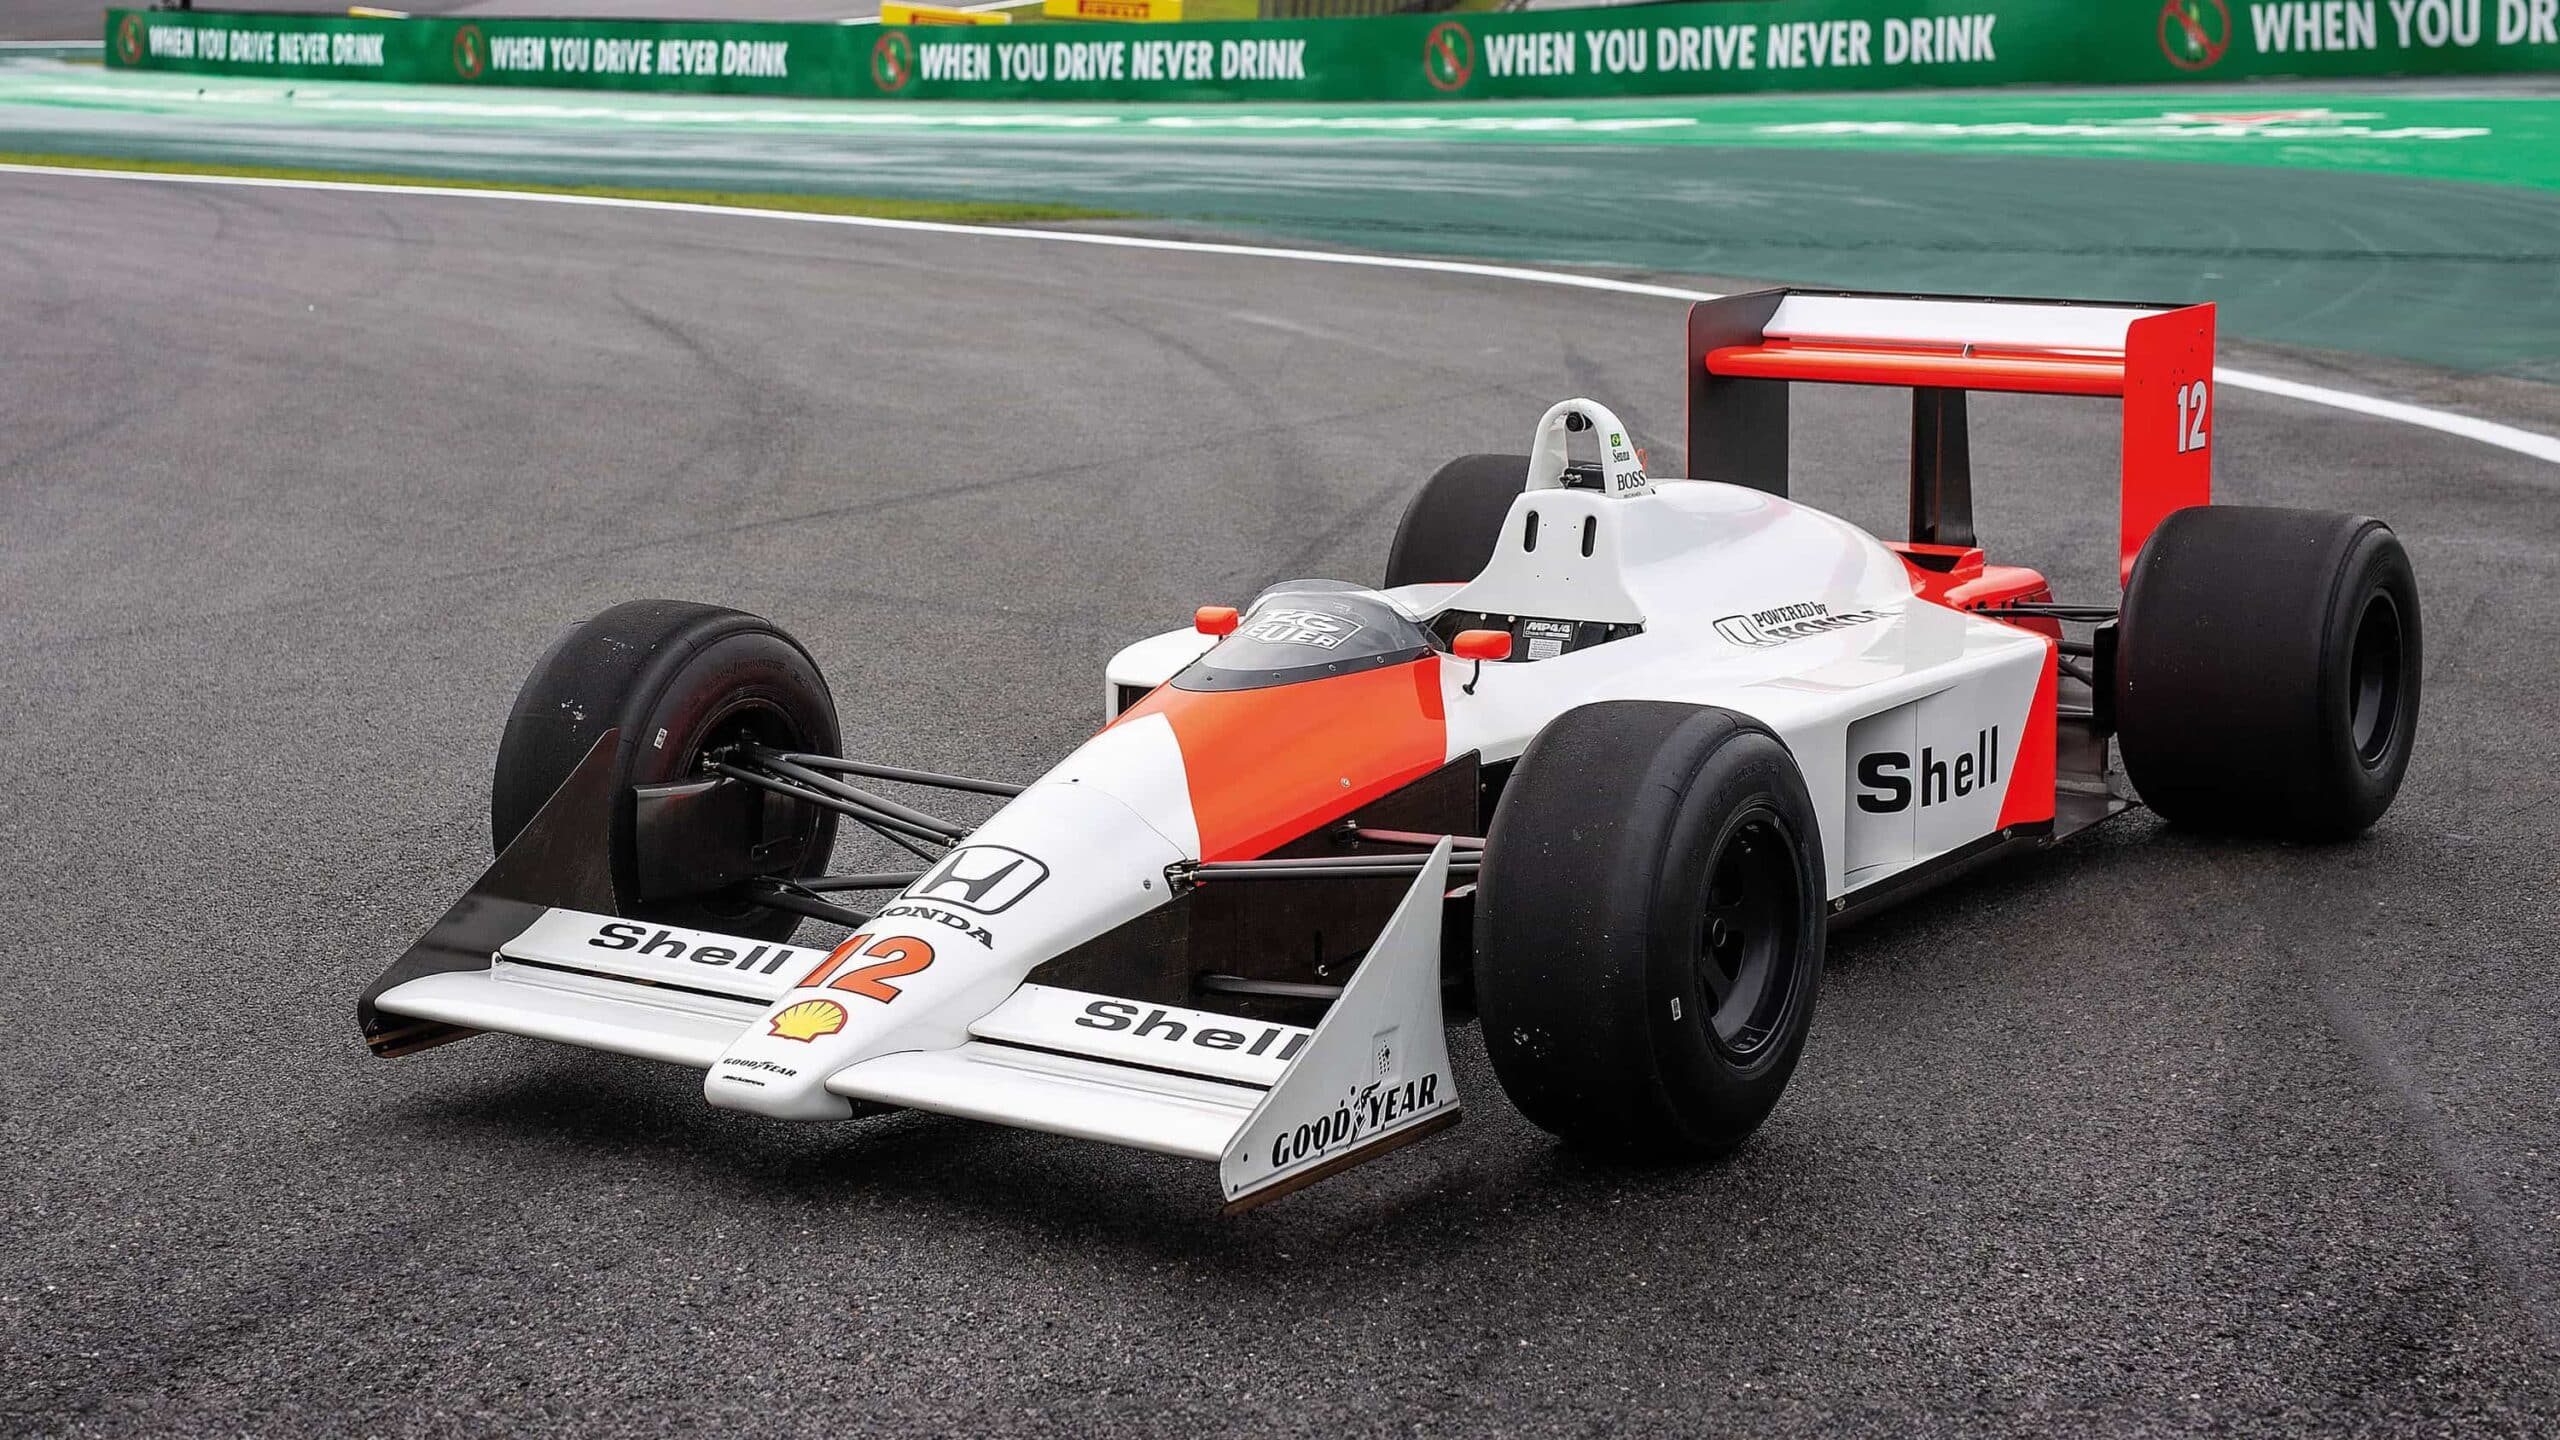 McLaren MP4:4